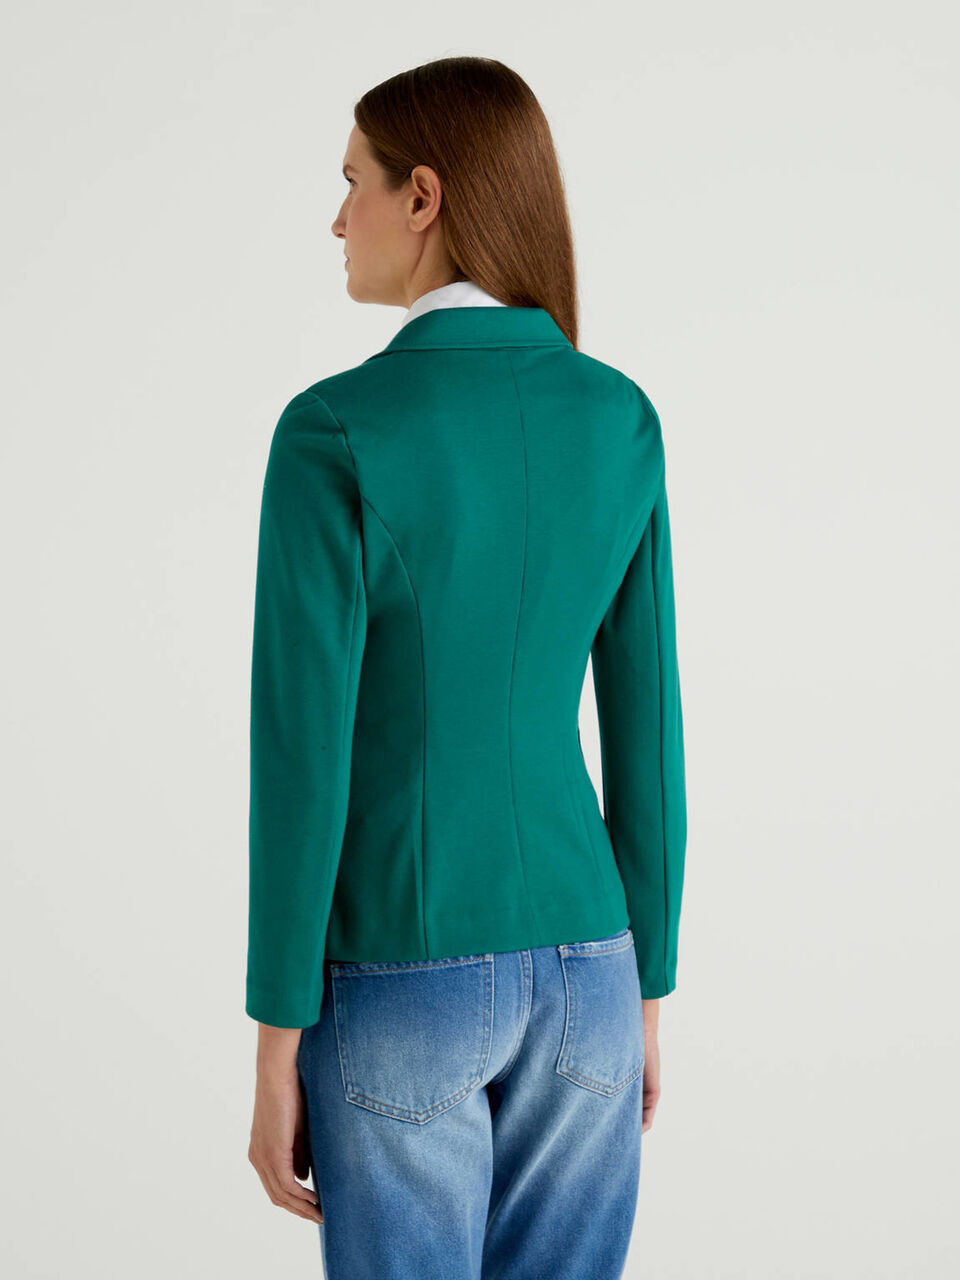 Dark green blazer in stretch cotton blend